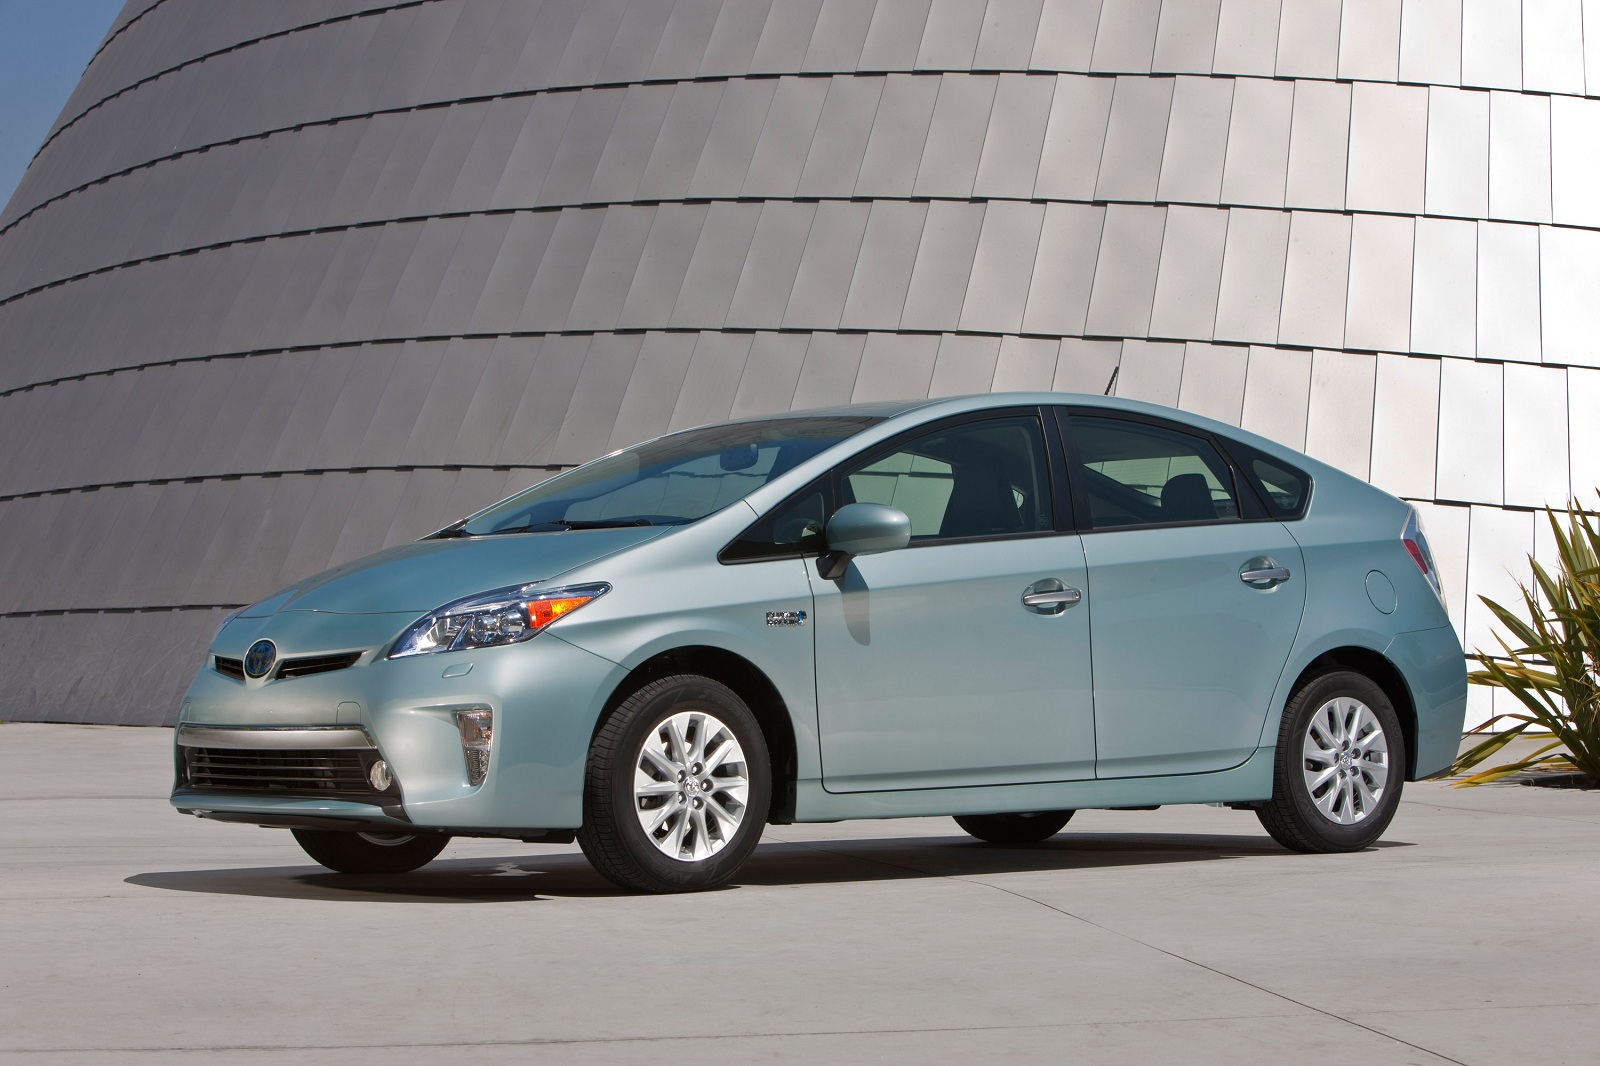 2014 Toyota Prius PlugIn Hybrid Price Cut By 2,000 To 4,600